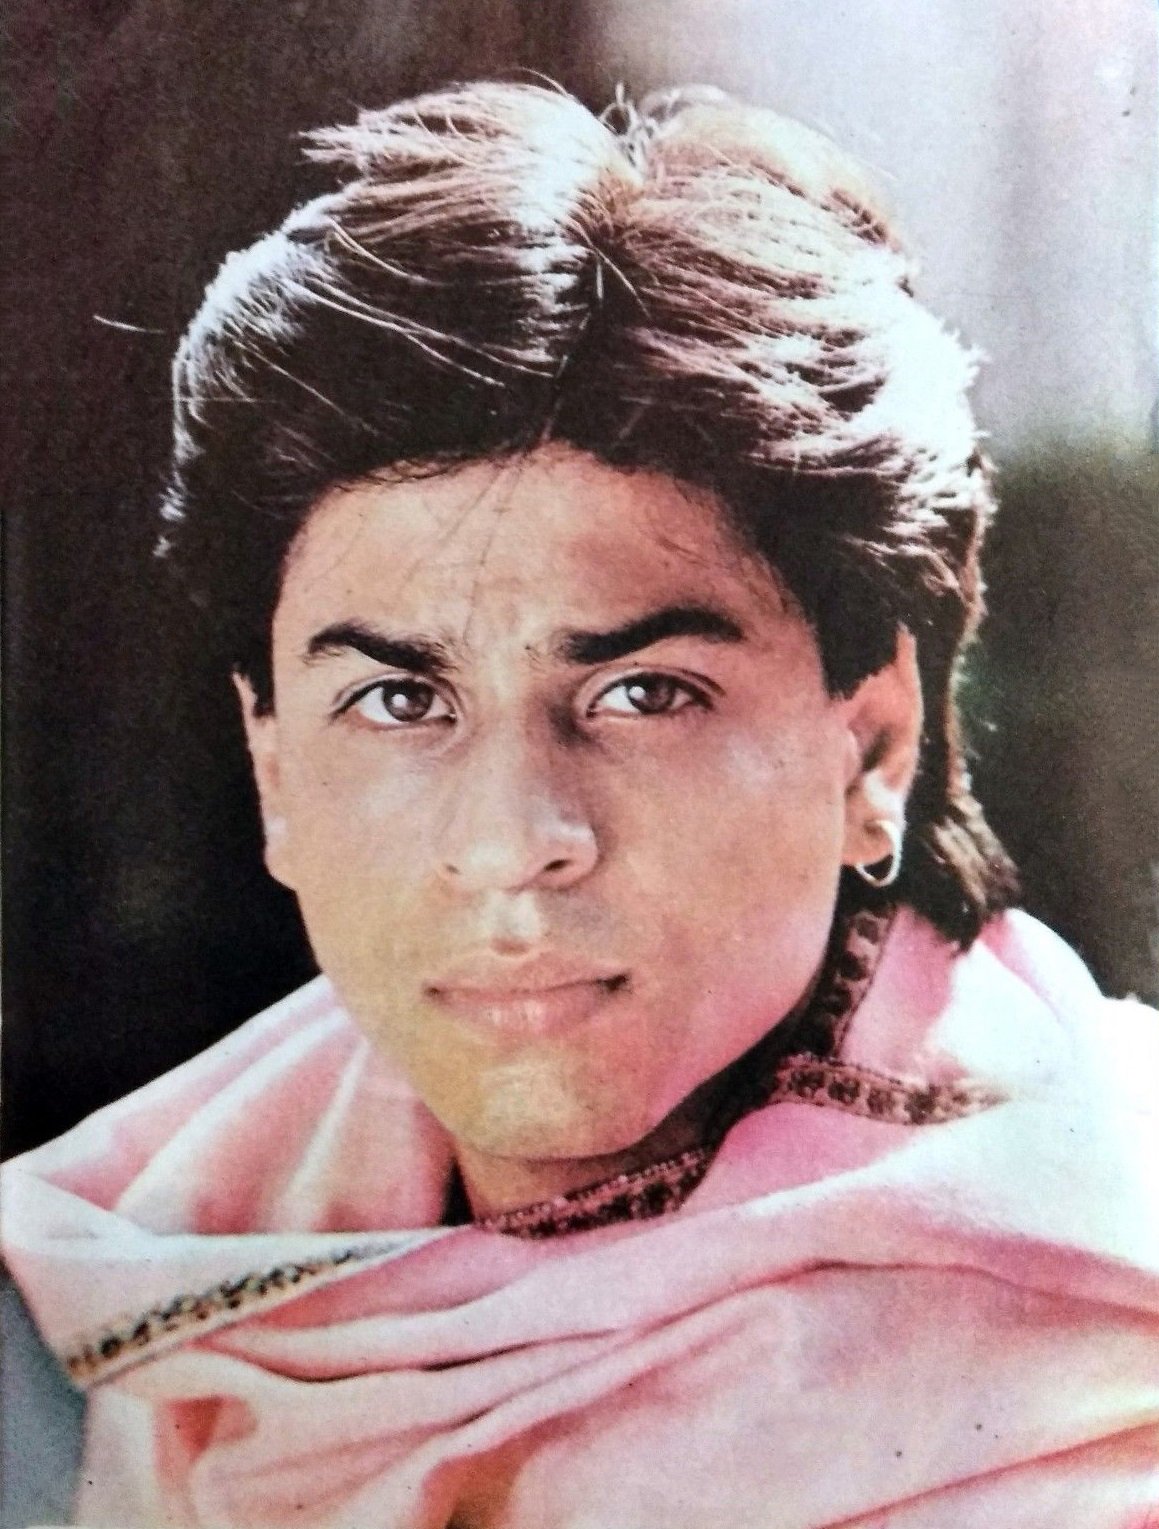 Shah Rukh Khan ♥ Fans - #ShahRukhKhan @iamsrk old post card 90's